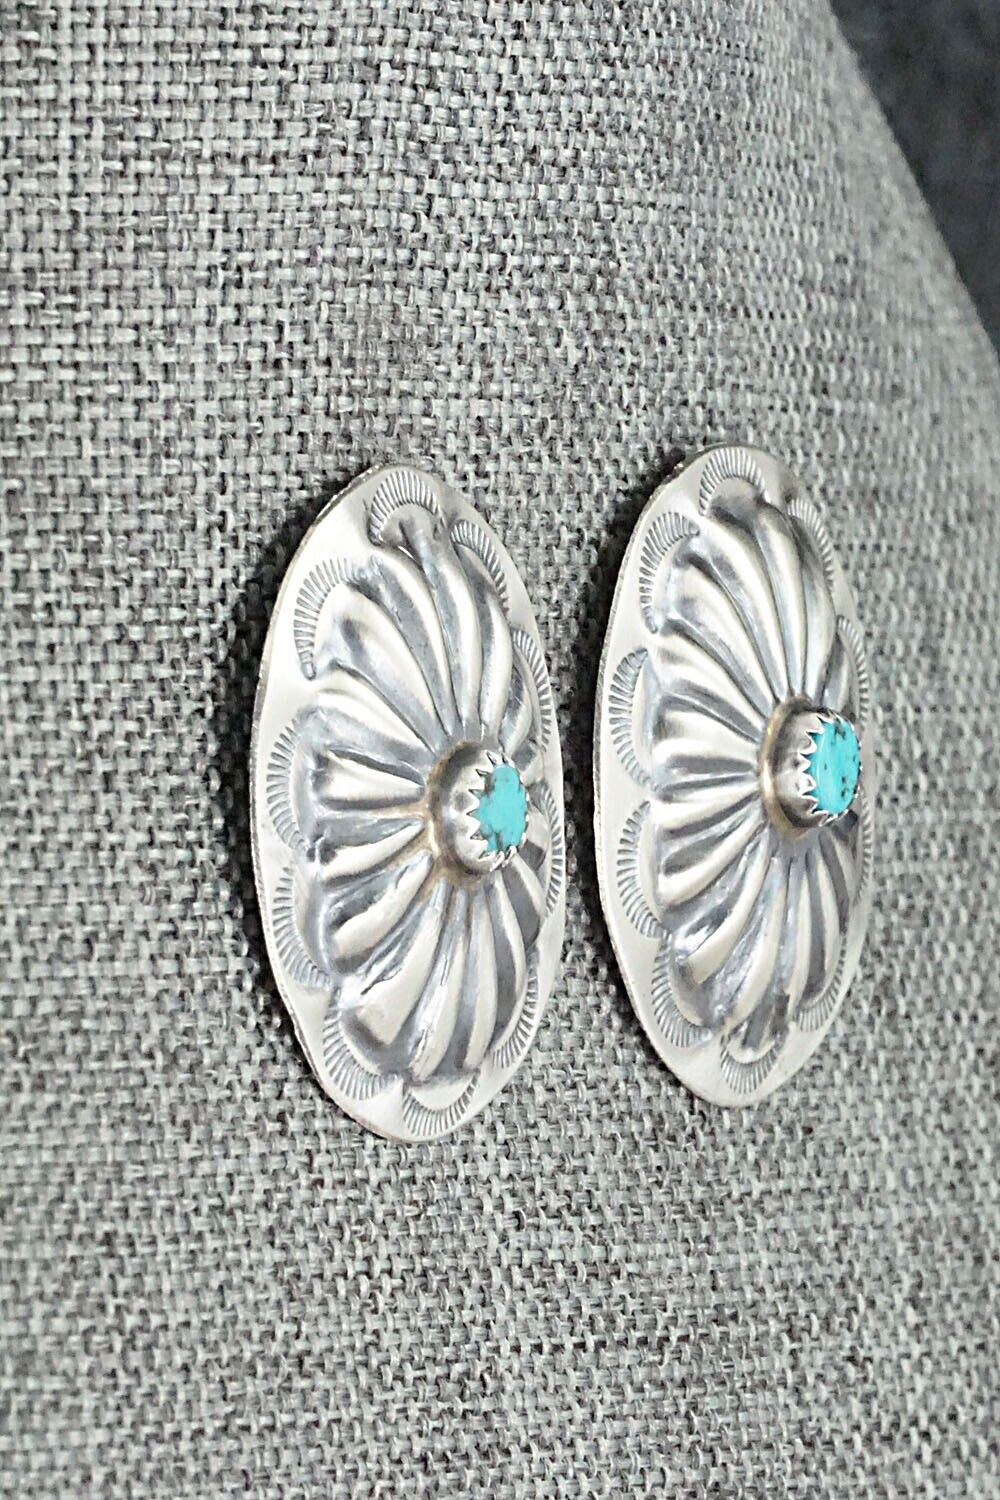 Turquoise & Sterling Silver Earrings - Joan Begay